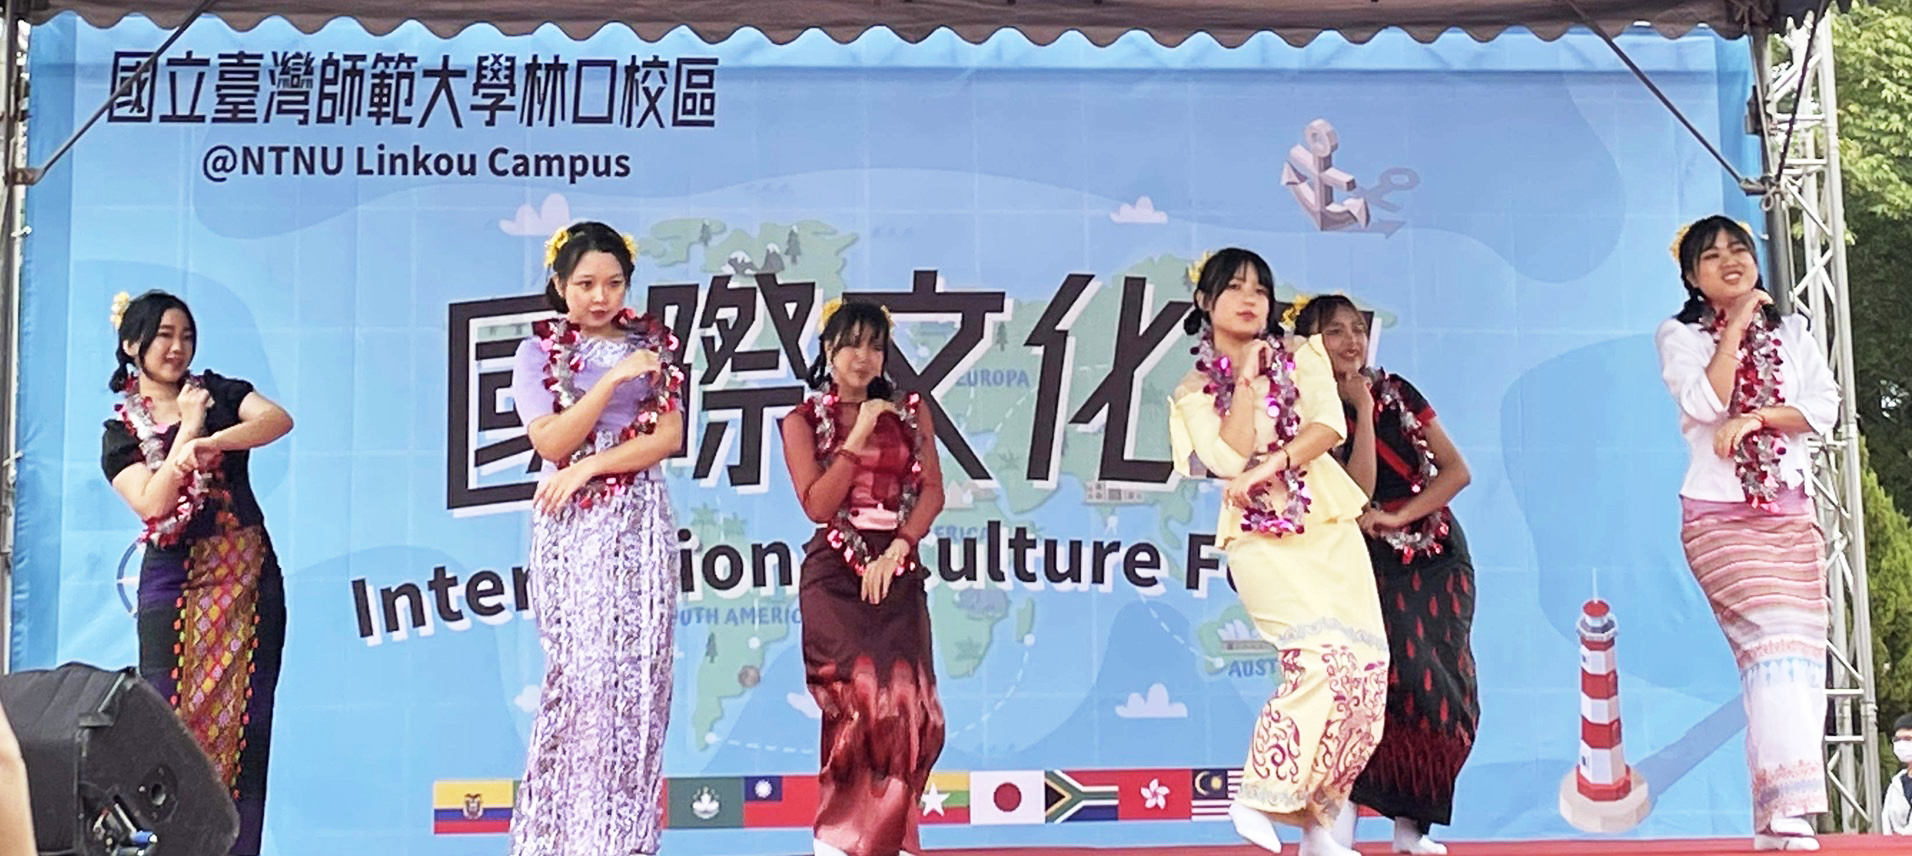 僑 先 部 緬 甸 學 生 的 「 潑 水 節 新 年 舞 」 表 演 ， 每 年 都 會 引 起 大 家 的 熱 烈 討 論 及 好 評 ！ 